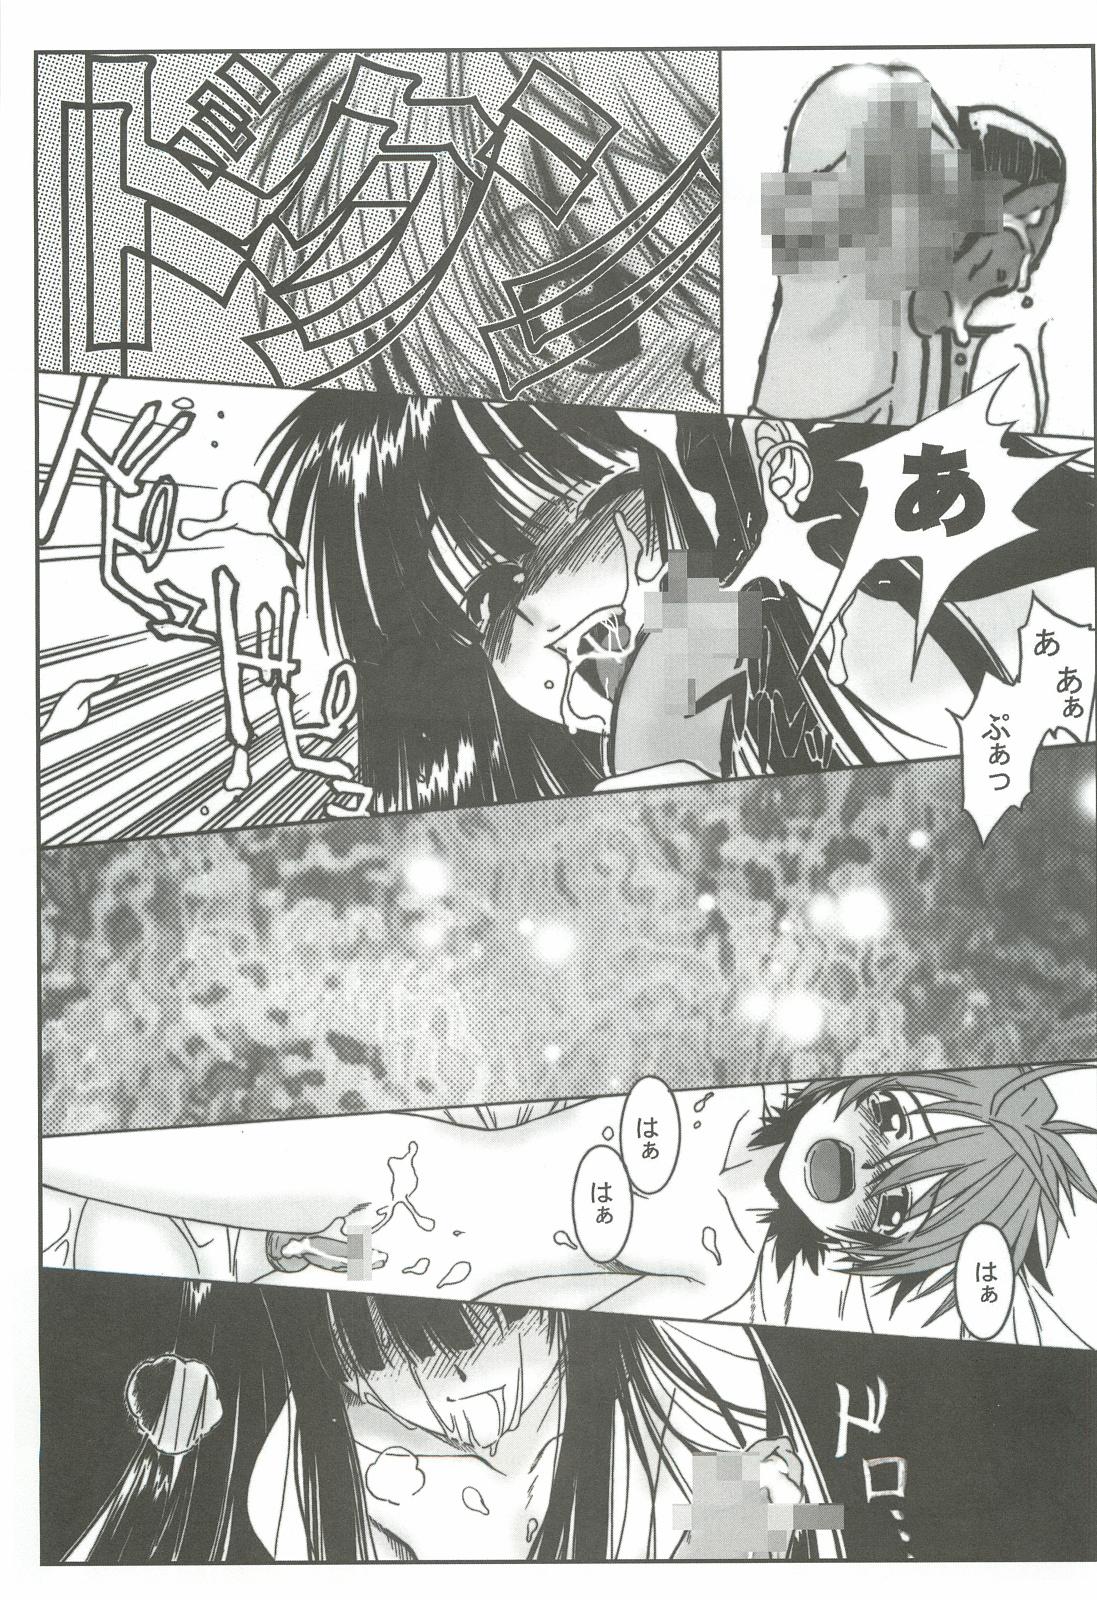 Domination Zoku Nangoku Shuka - Mahou sensei negima Love hina Animation - Page 10